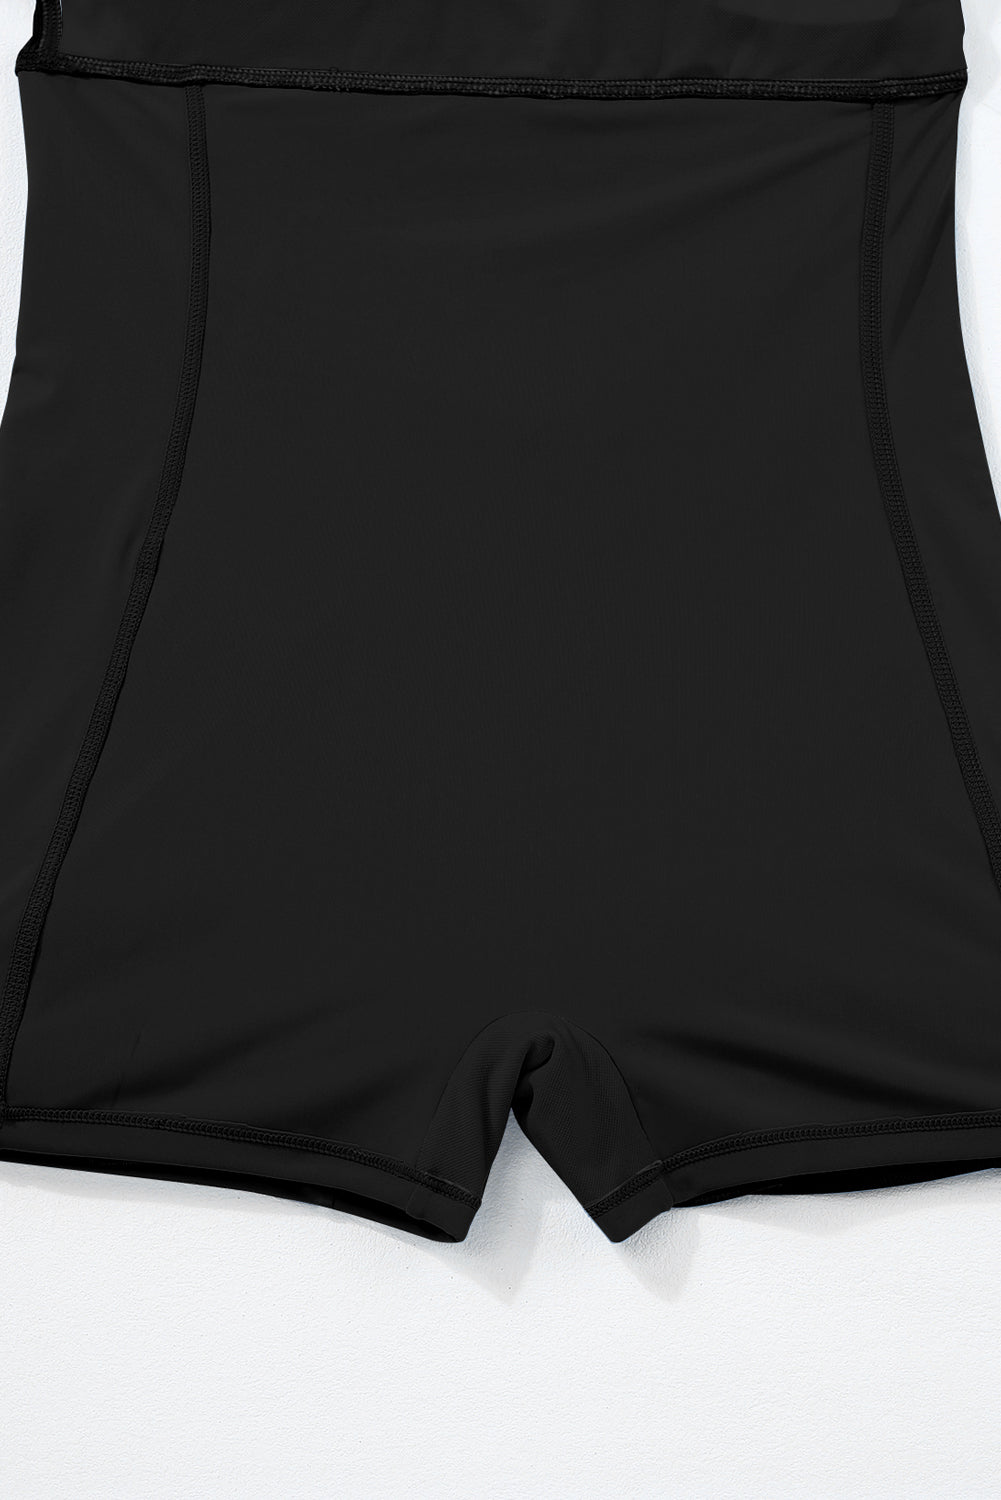 Crna sportska jednodijelna kupaća haljina s rebrastim naramenicama